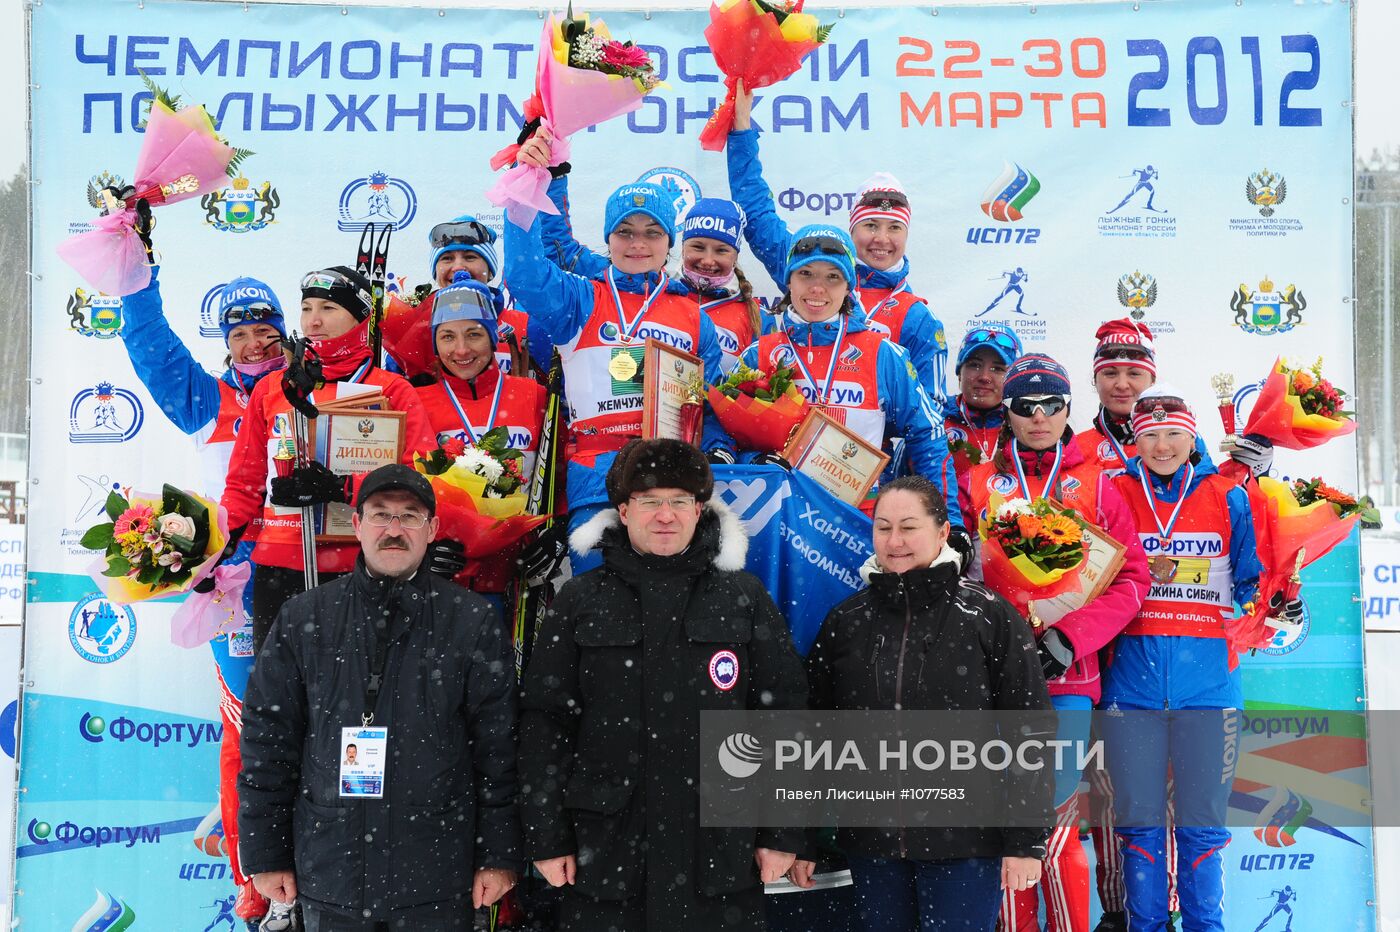 Лыжные гонки. Чемпионат России. Седьмой день